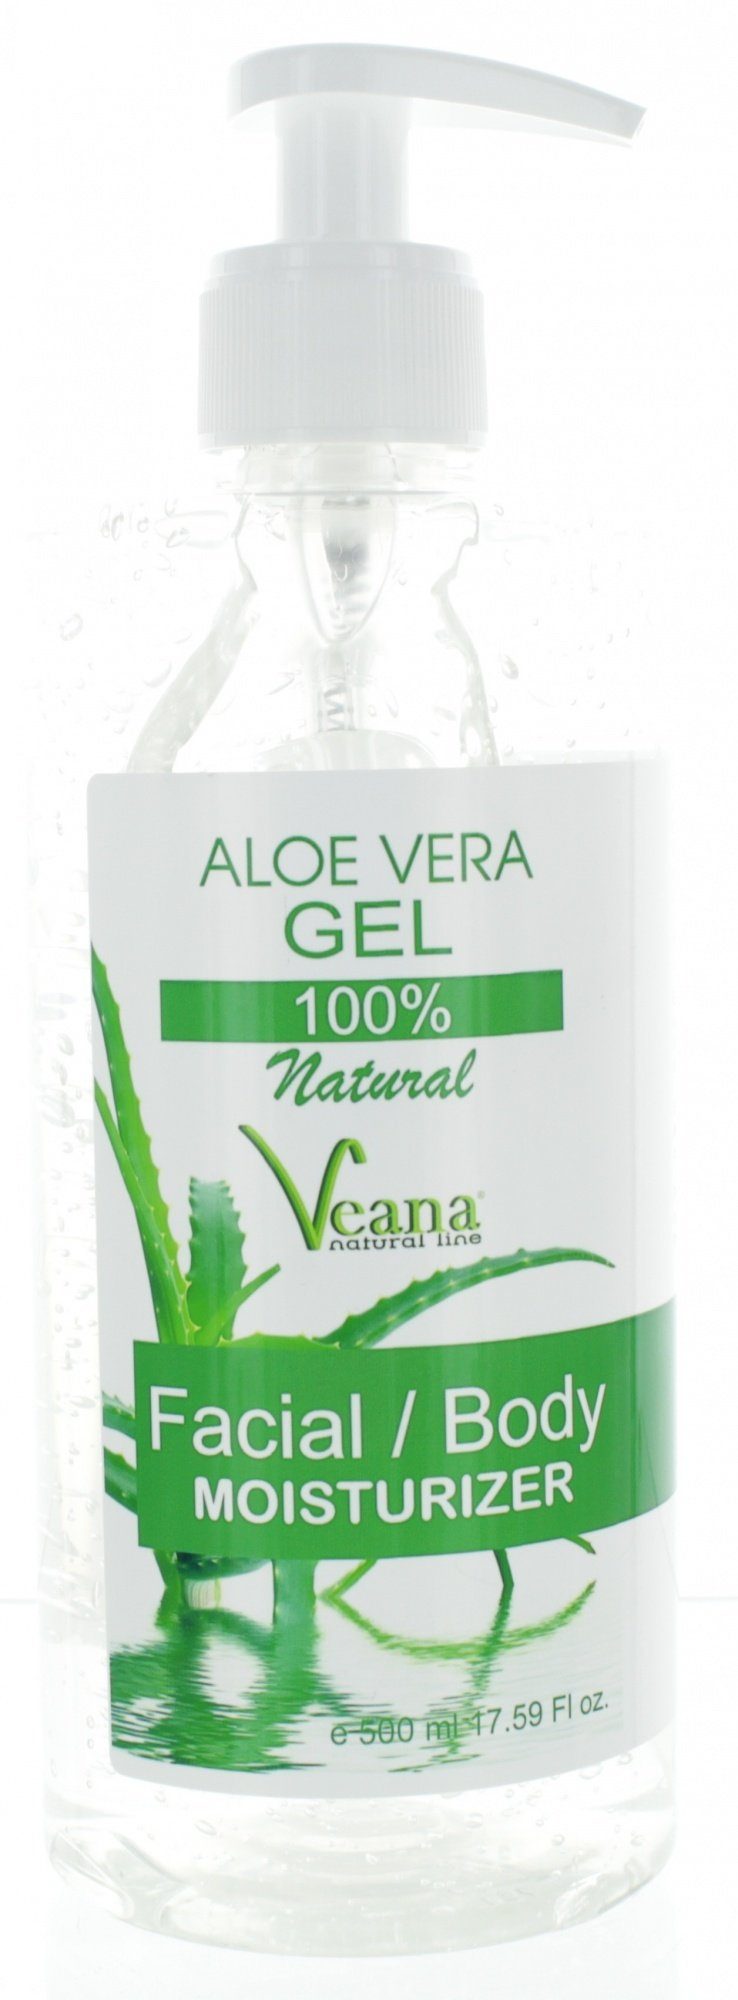 Veana Körperpflegemittel Aloe Vera 100% wirksam - Insektenstiche, Europe Schuppenflechte Rosacea, Qualität und Akne, natural (500ml) PREMIUM bei gegen - Sonnenbrand, made in Neurodermitis Gel und Entzündungen